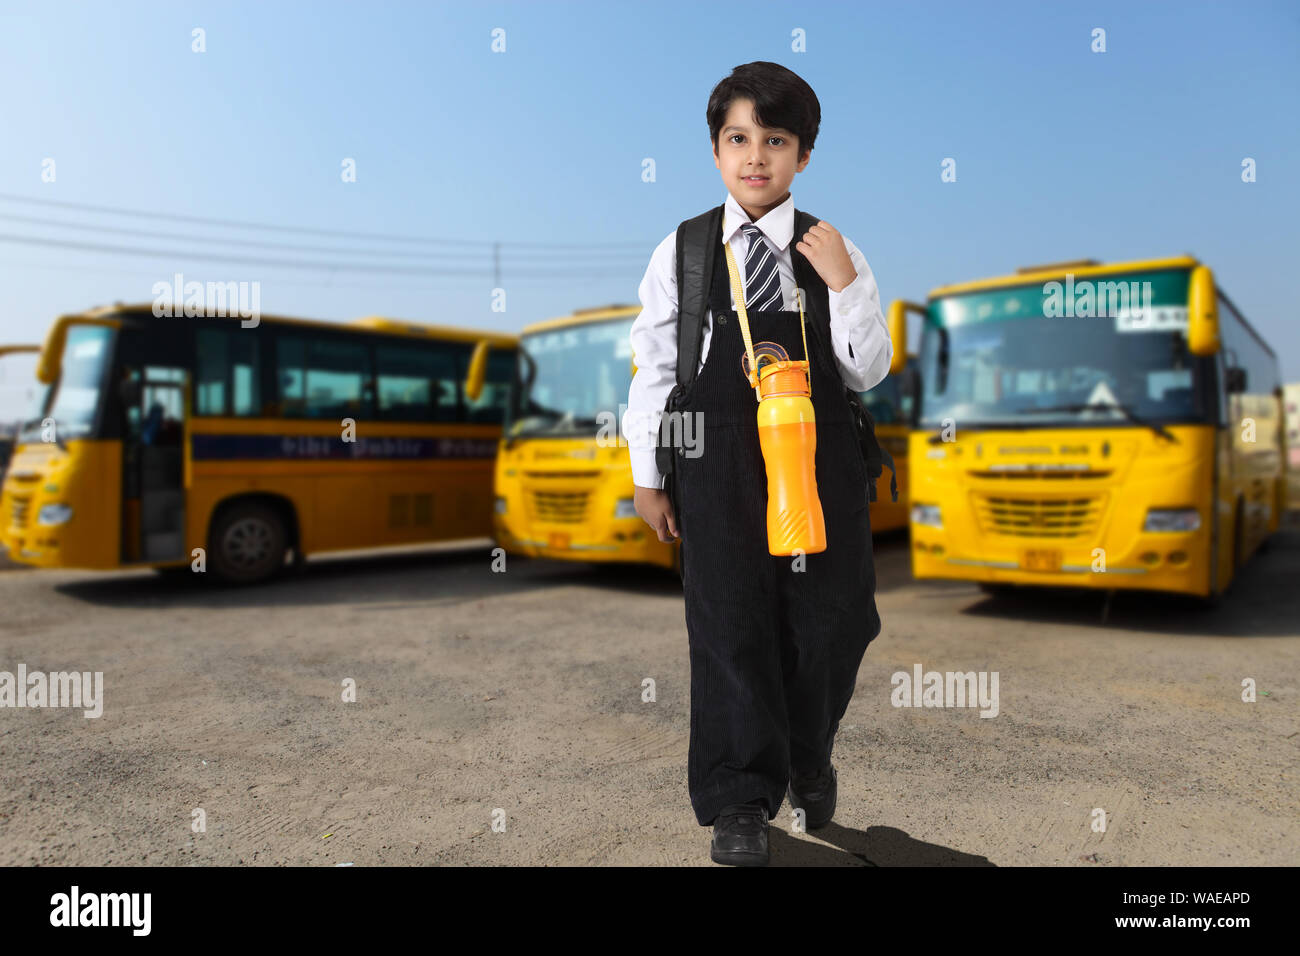 Élève debout avec des bus scolaires en arrière-plan Banque D'Images